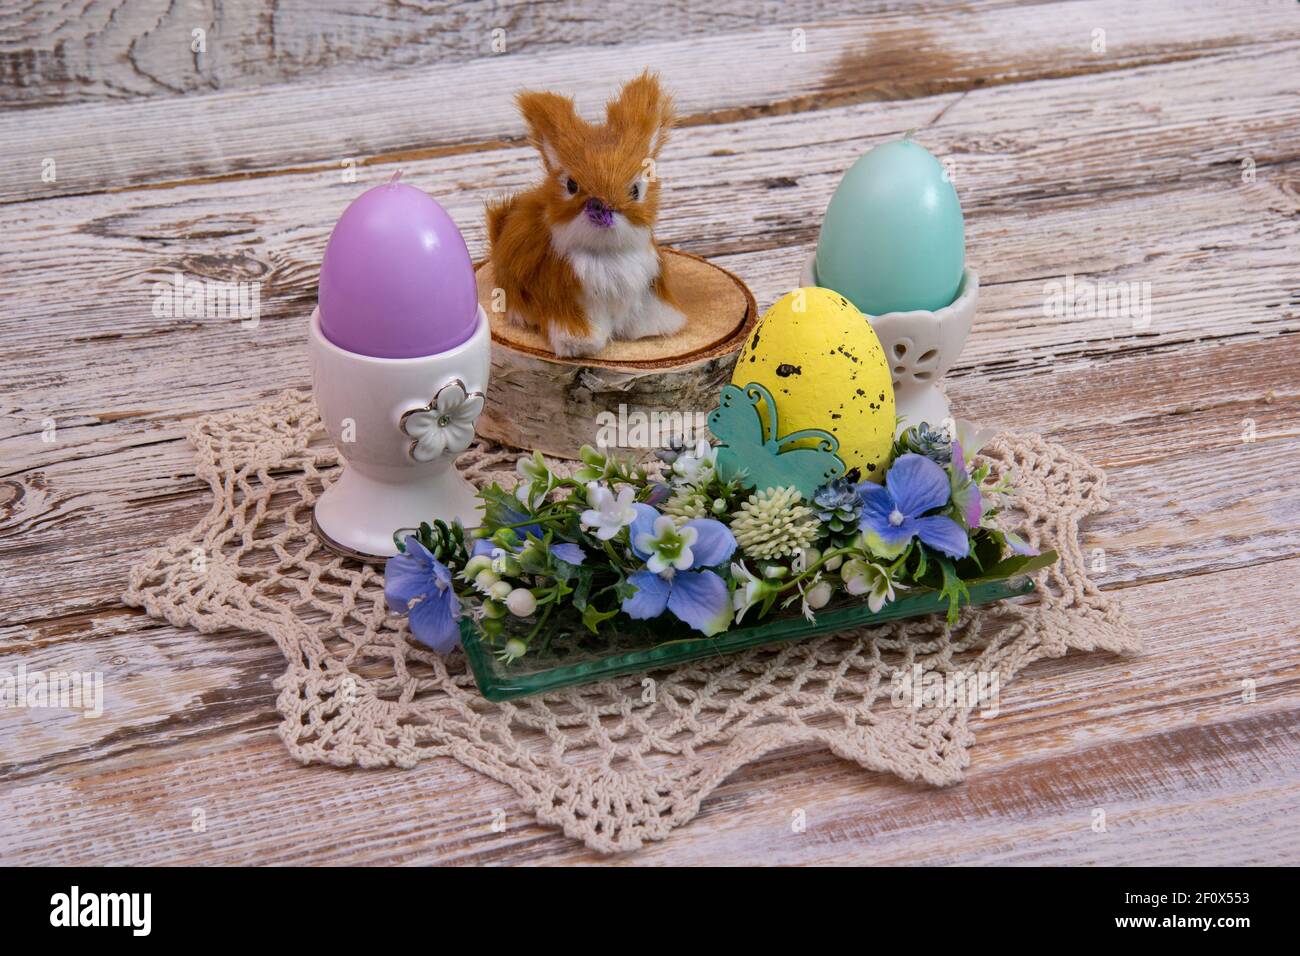 Lapin de Pâques sur une souche avec des fleurs d'oeufs de Pâques et des bougies en forme d'oeufs. Banque D'Images